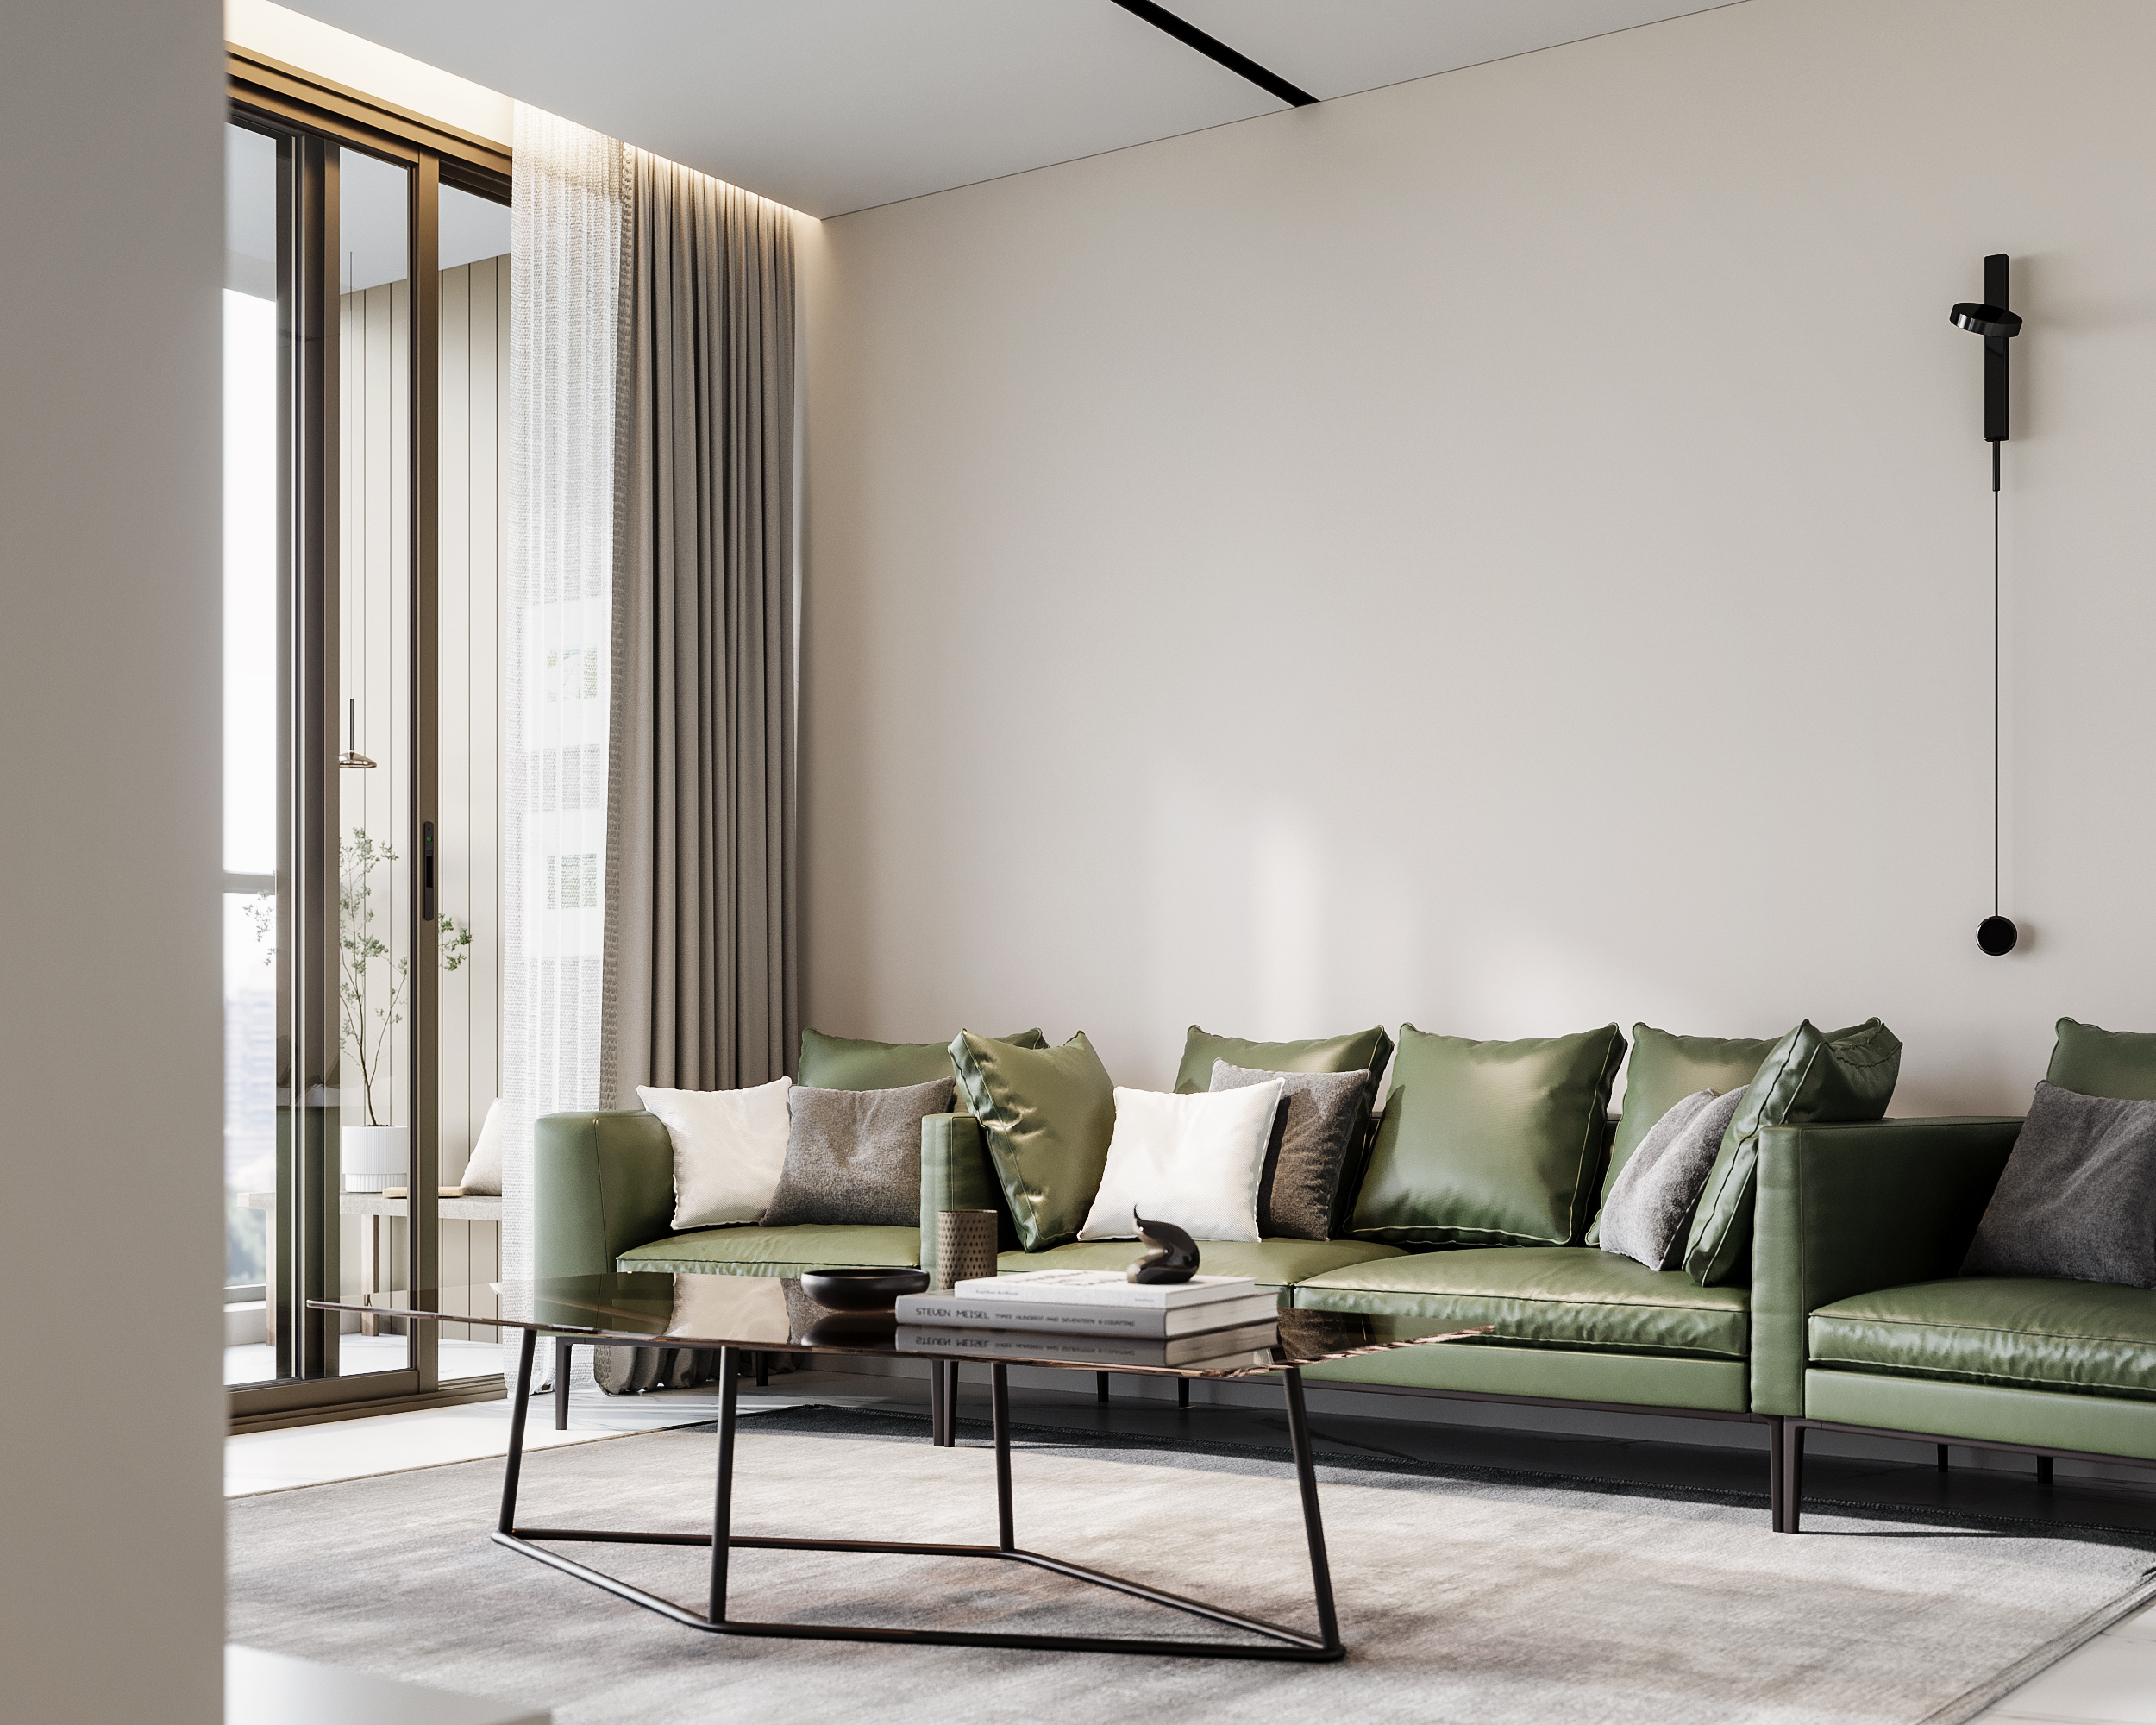 現代簡約風的客廳設計加入工業風的墨綠色沙發，營造出一種大膽個性的設計美